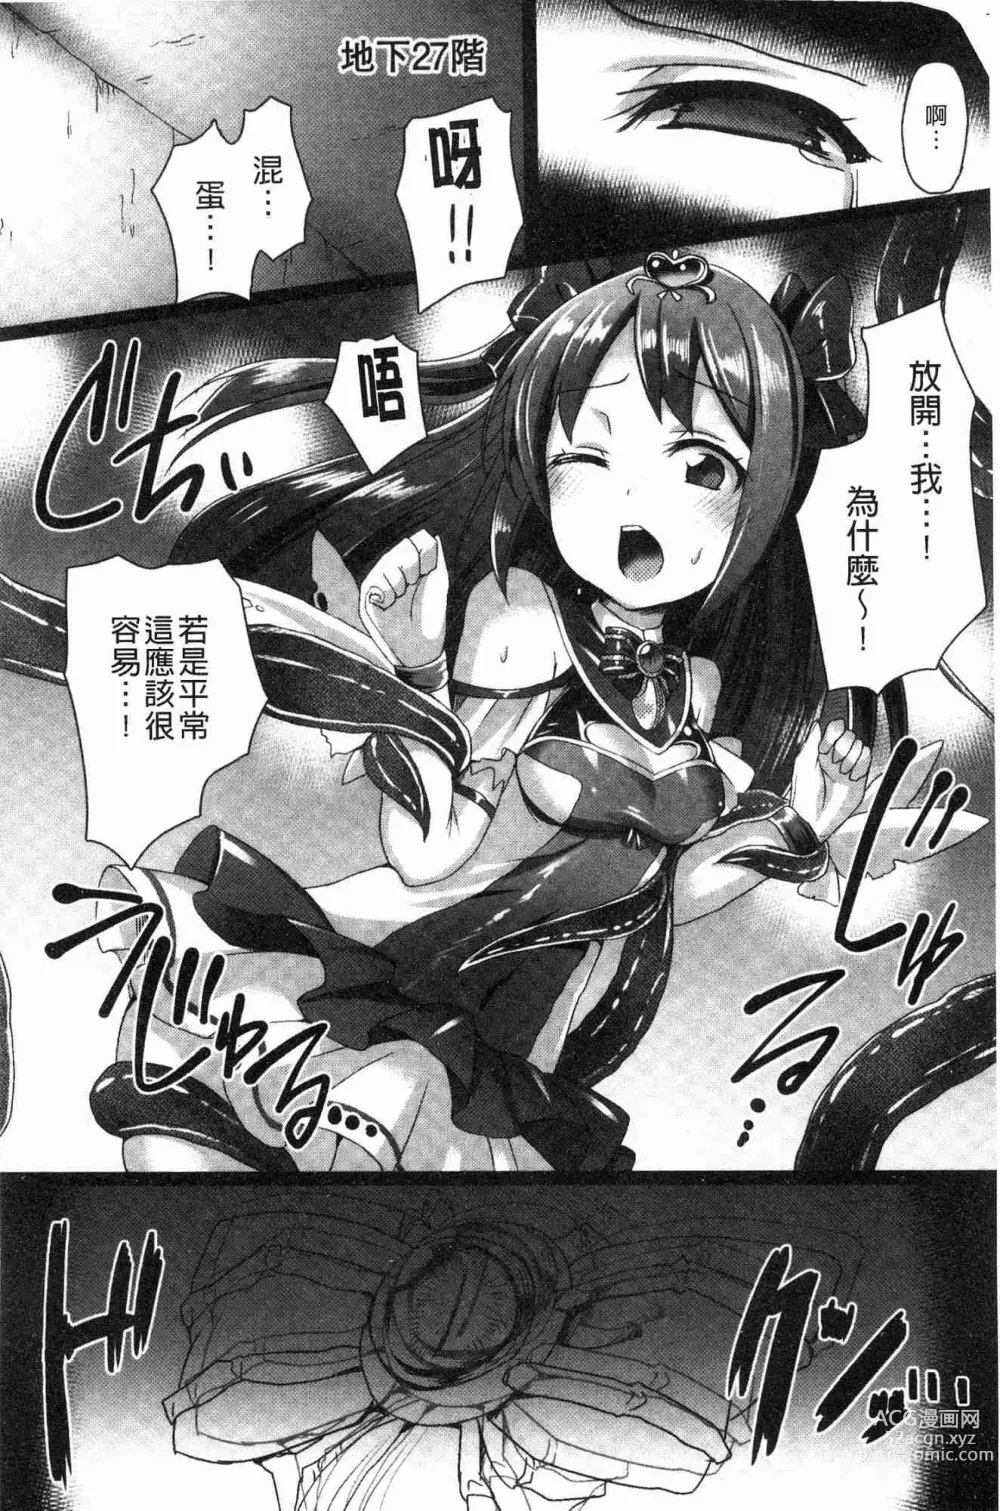 Page 182 of manga 愛聖天使ラブメアリー ~悪性受胎~